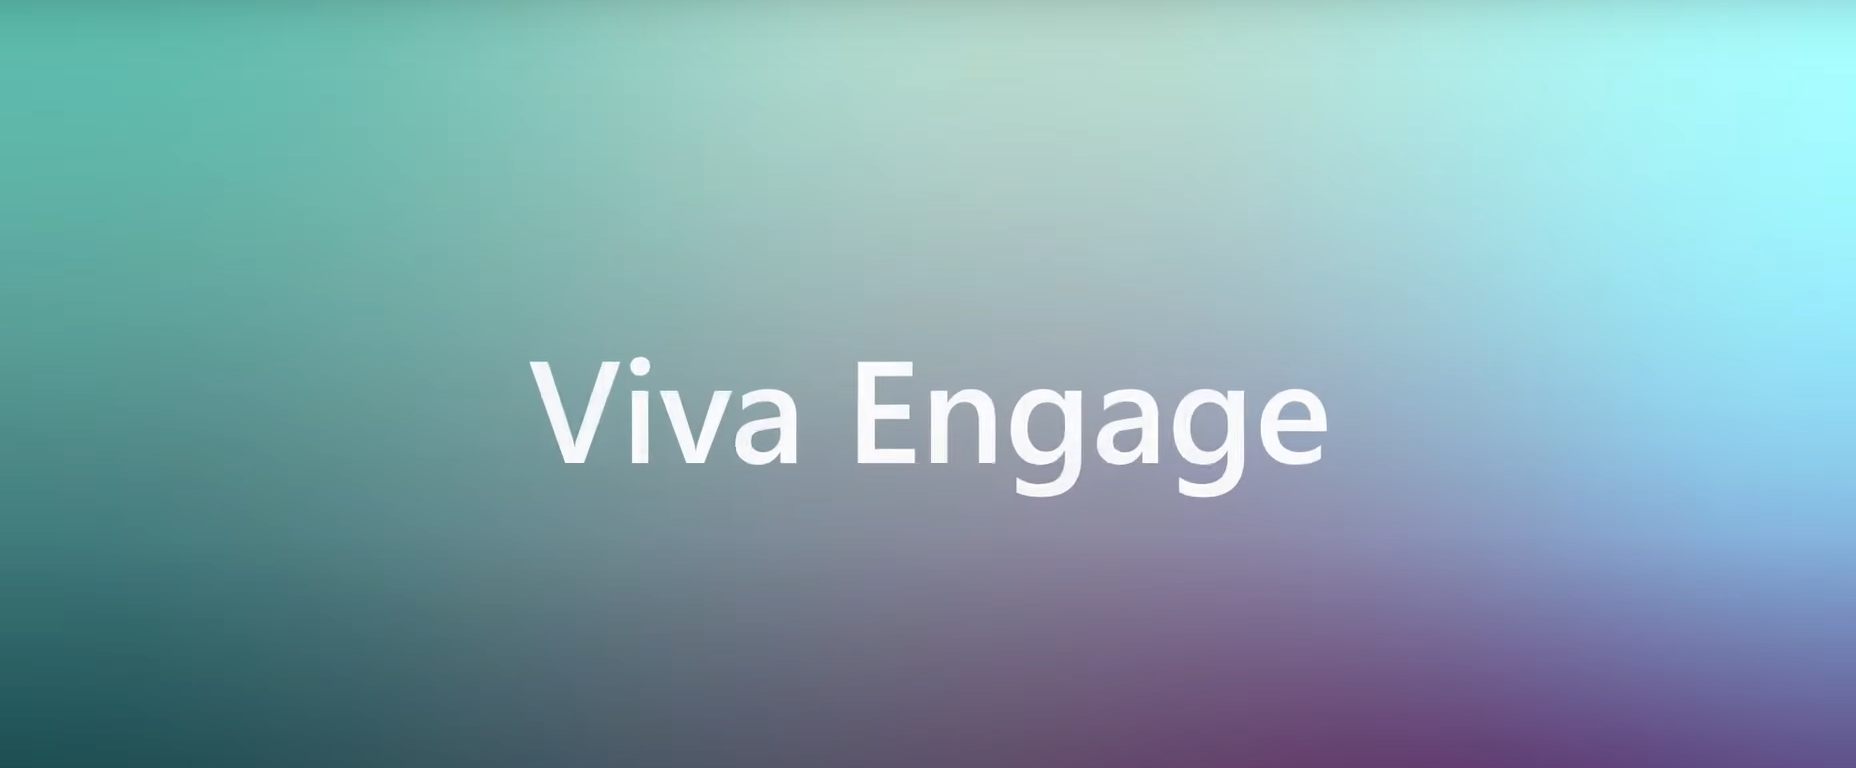 Microsoft Viva Engage – eine Plattform zum Vernetzen